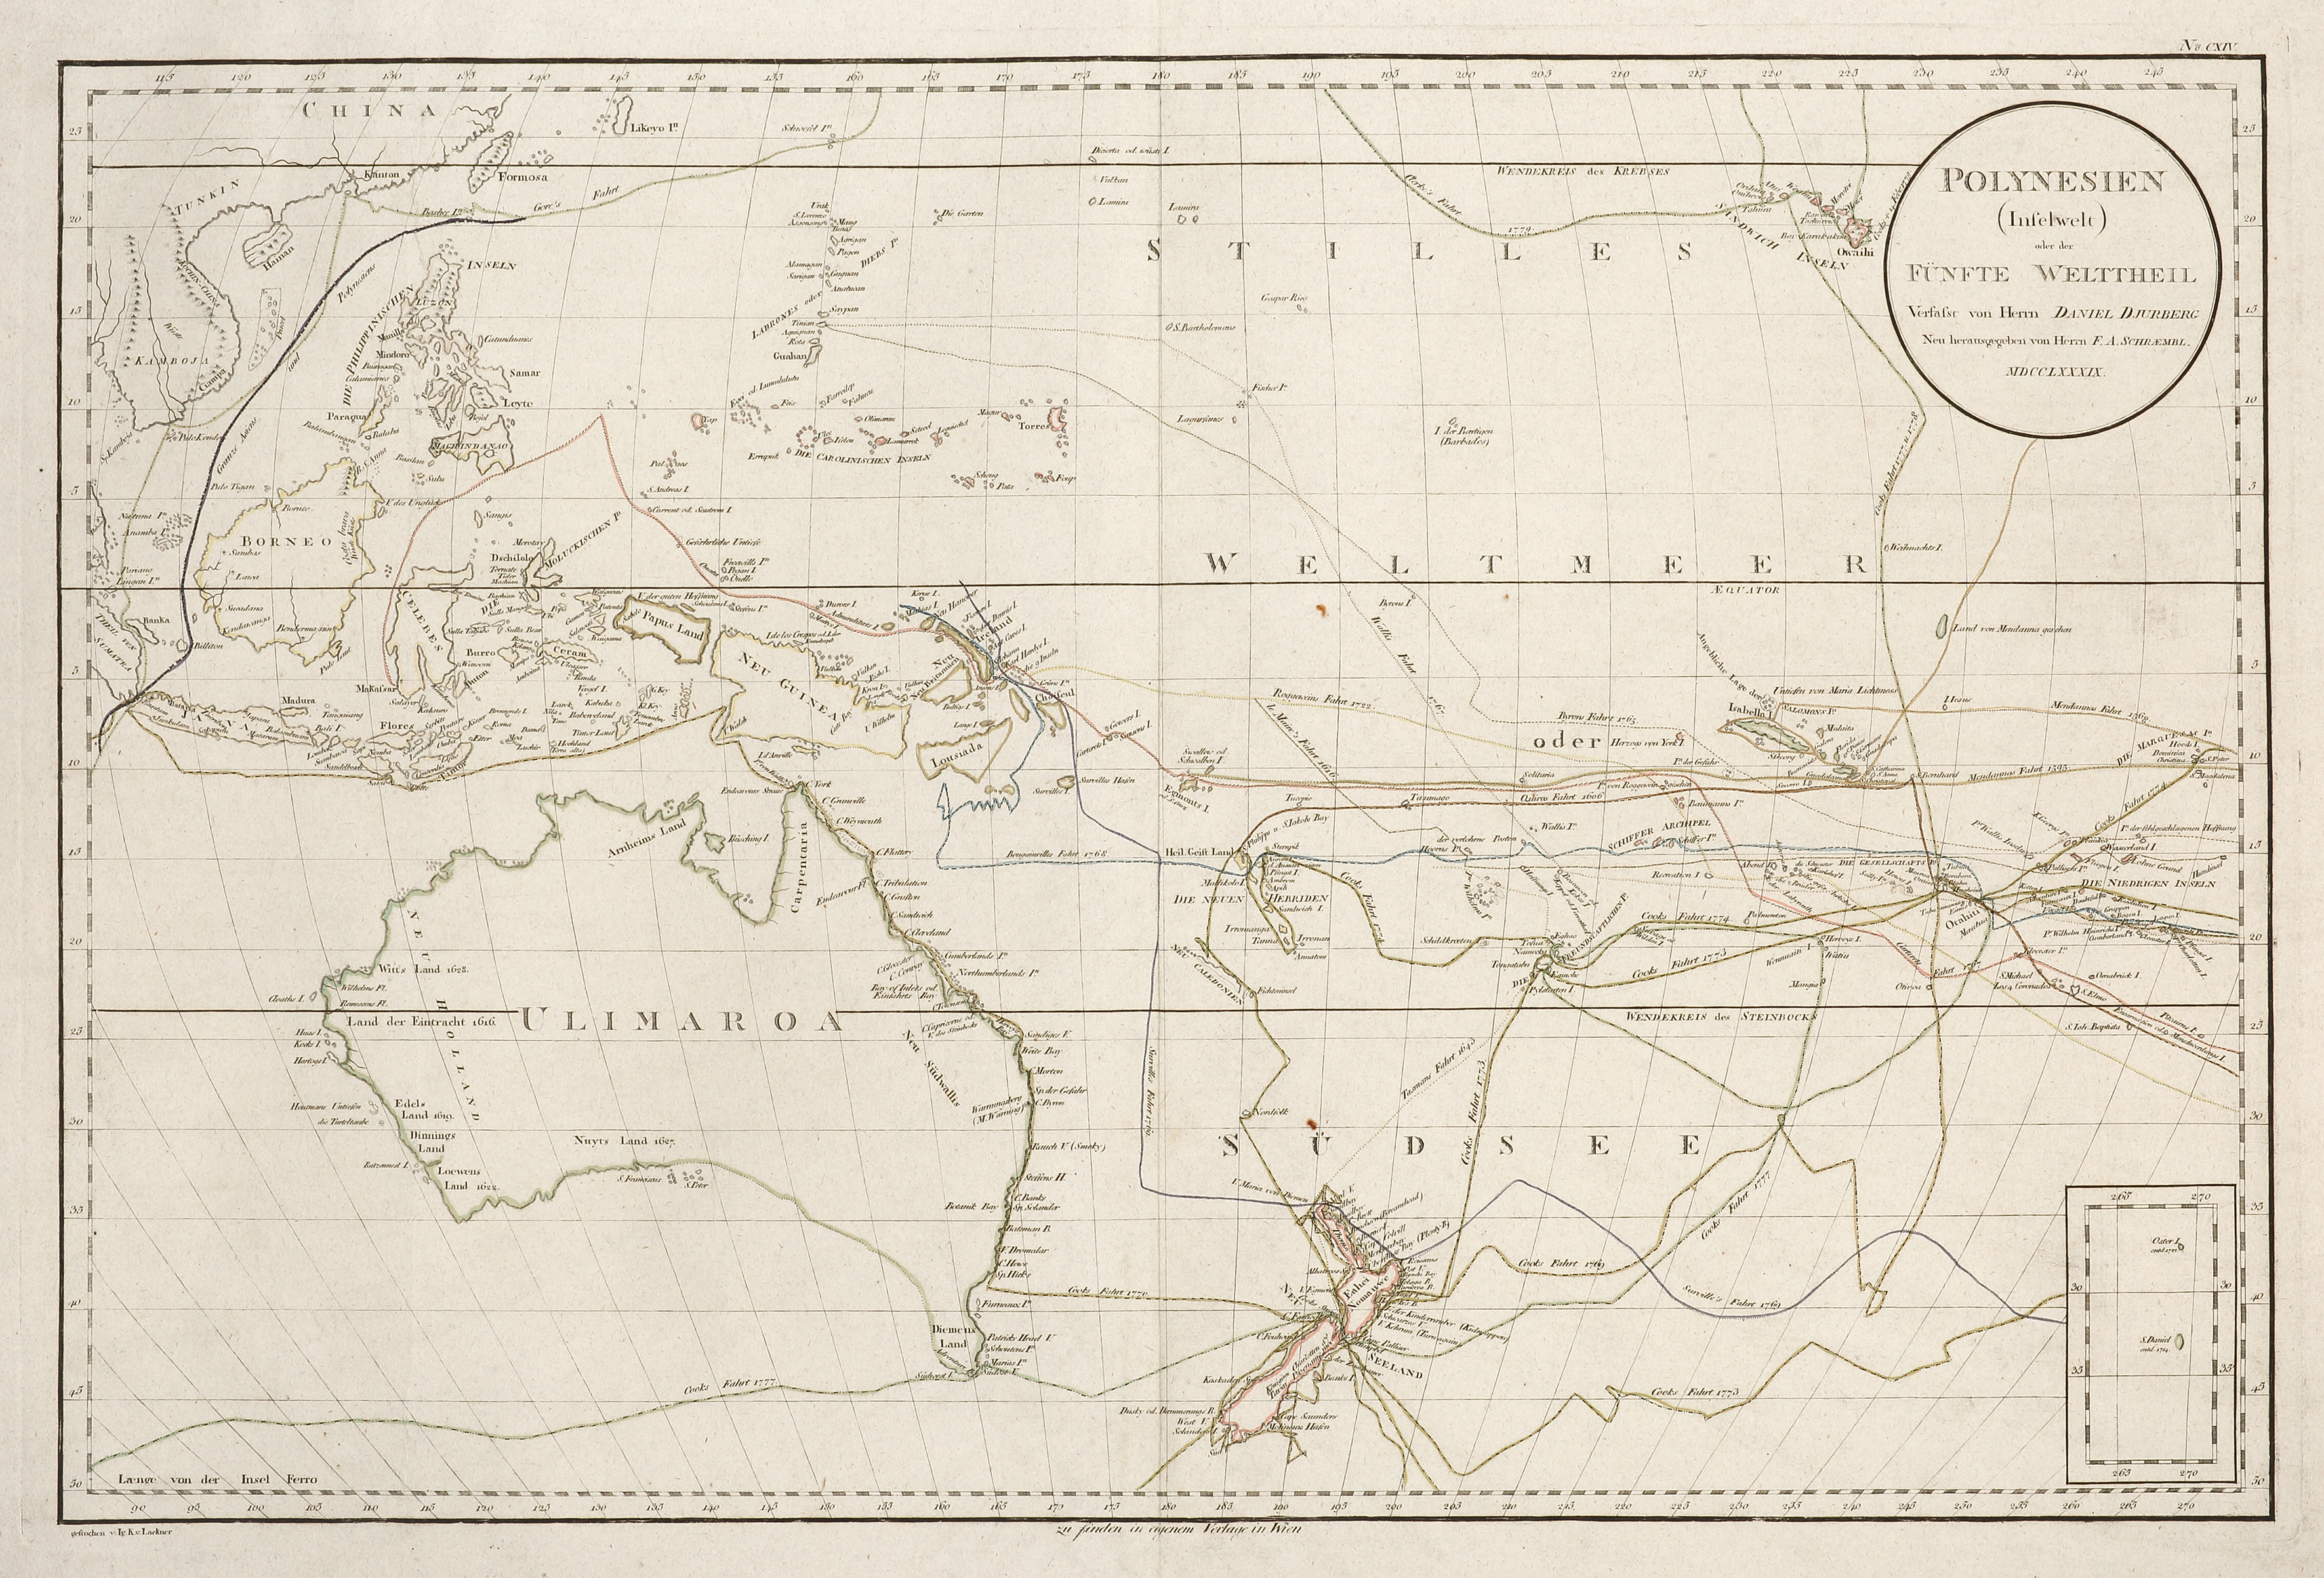 Polynesien (Inselwelt) oder der Funfte Welttheil Versasst von Herrn Daniel Djurberg .... MDCCLXXXIX - Antique Map from 1789